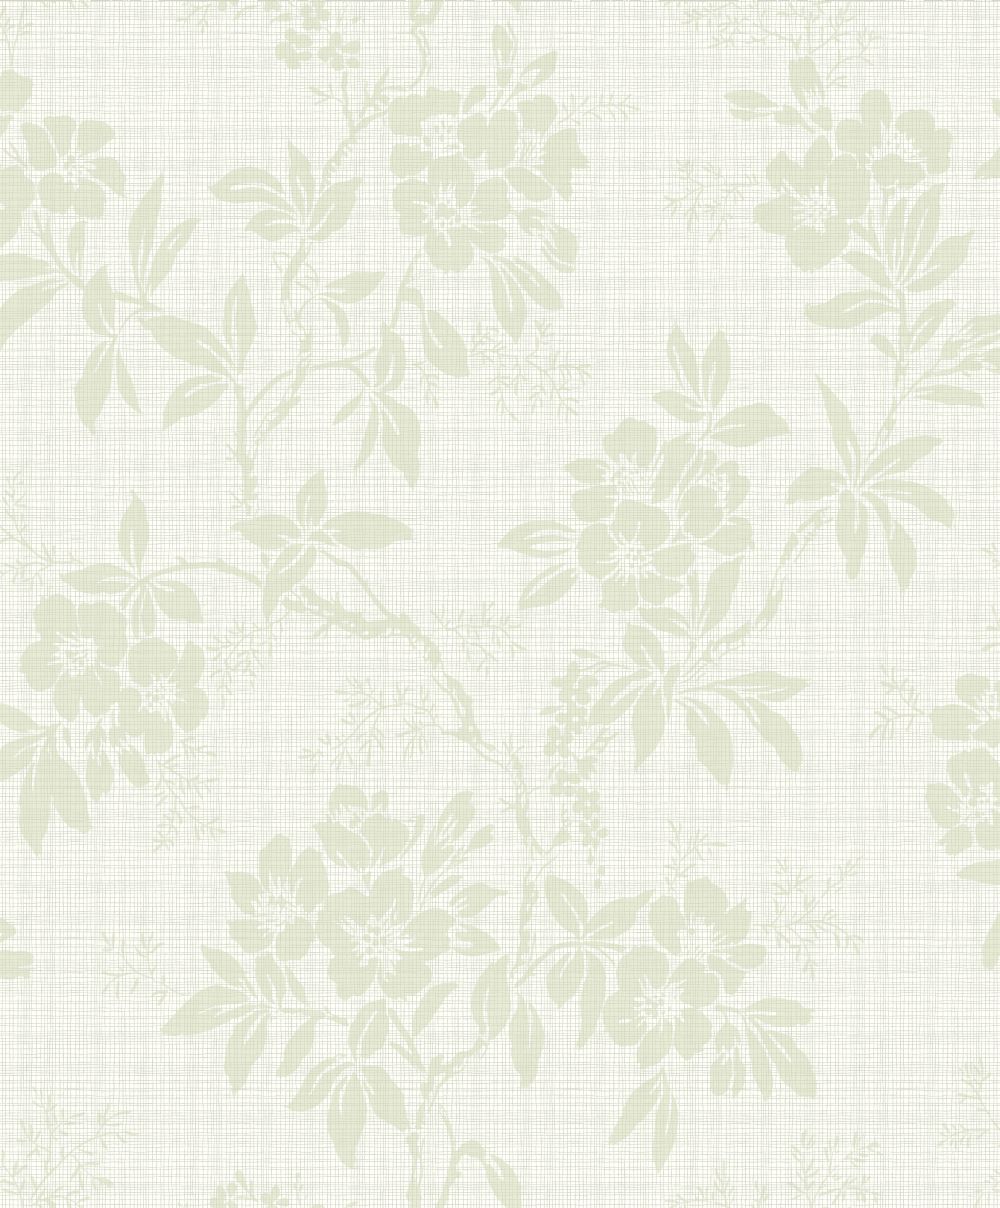 창백한 녹색 벽지,벽지,무늬,베이지,식물,꽃 무늬 디자인